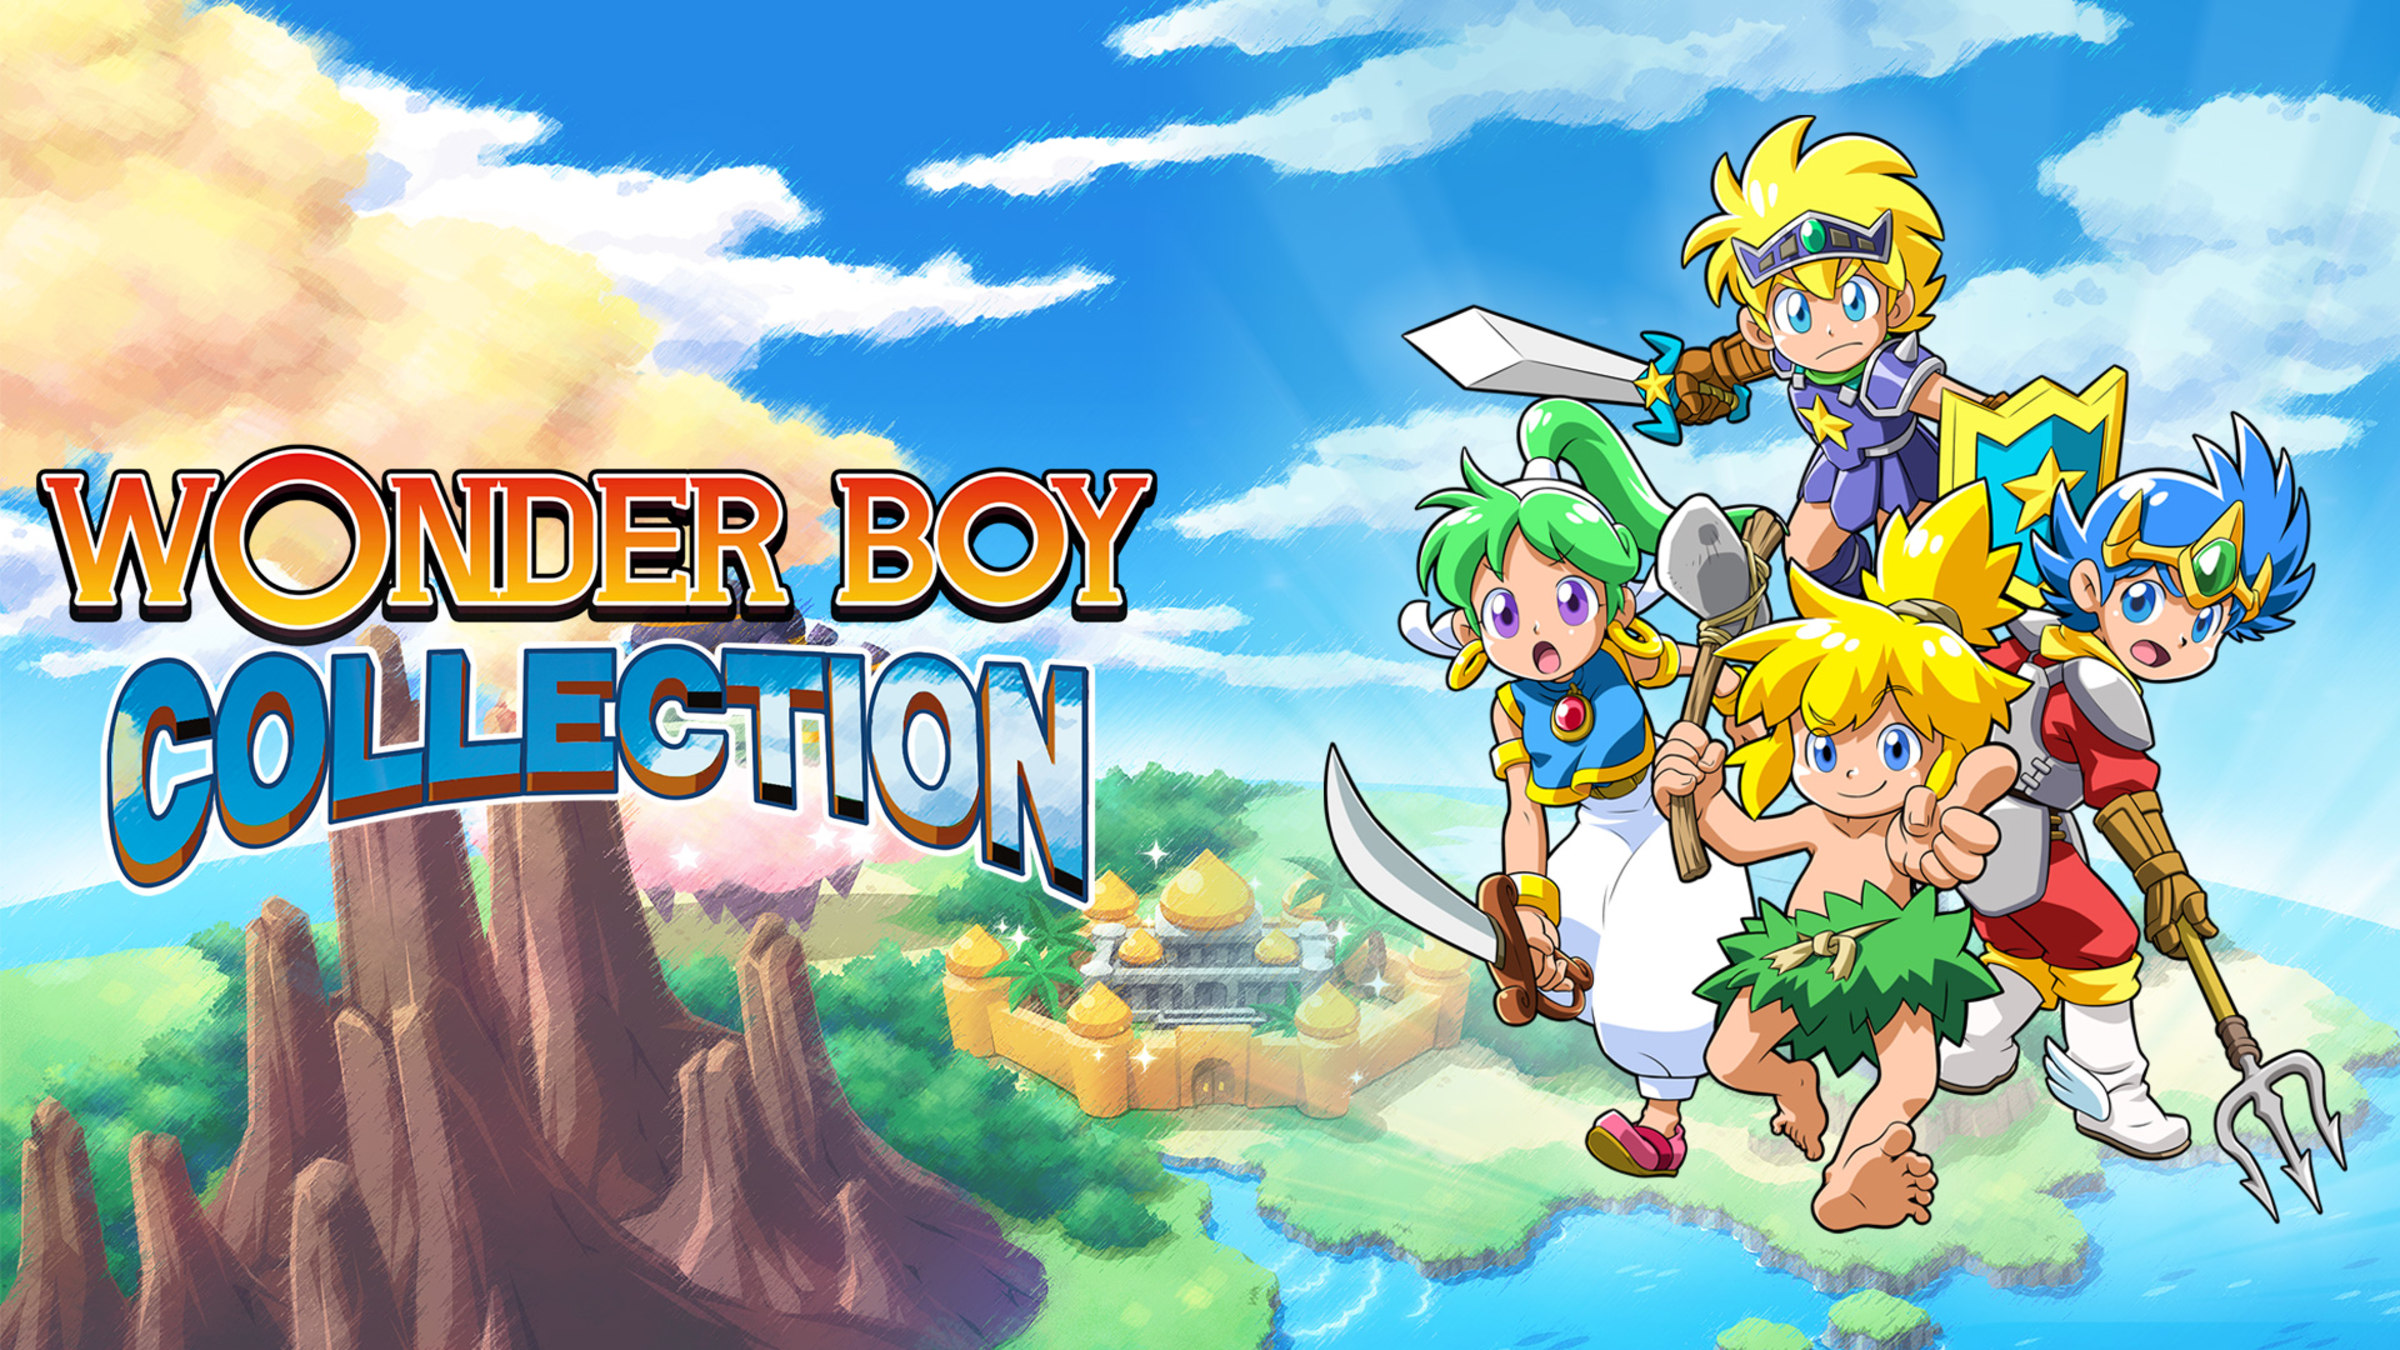 Wonder Boy Collection for Nintendo - Nintendo